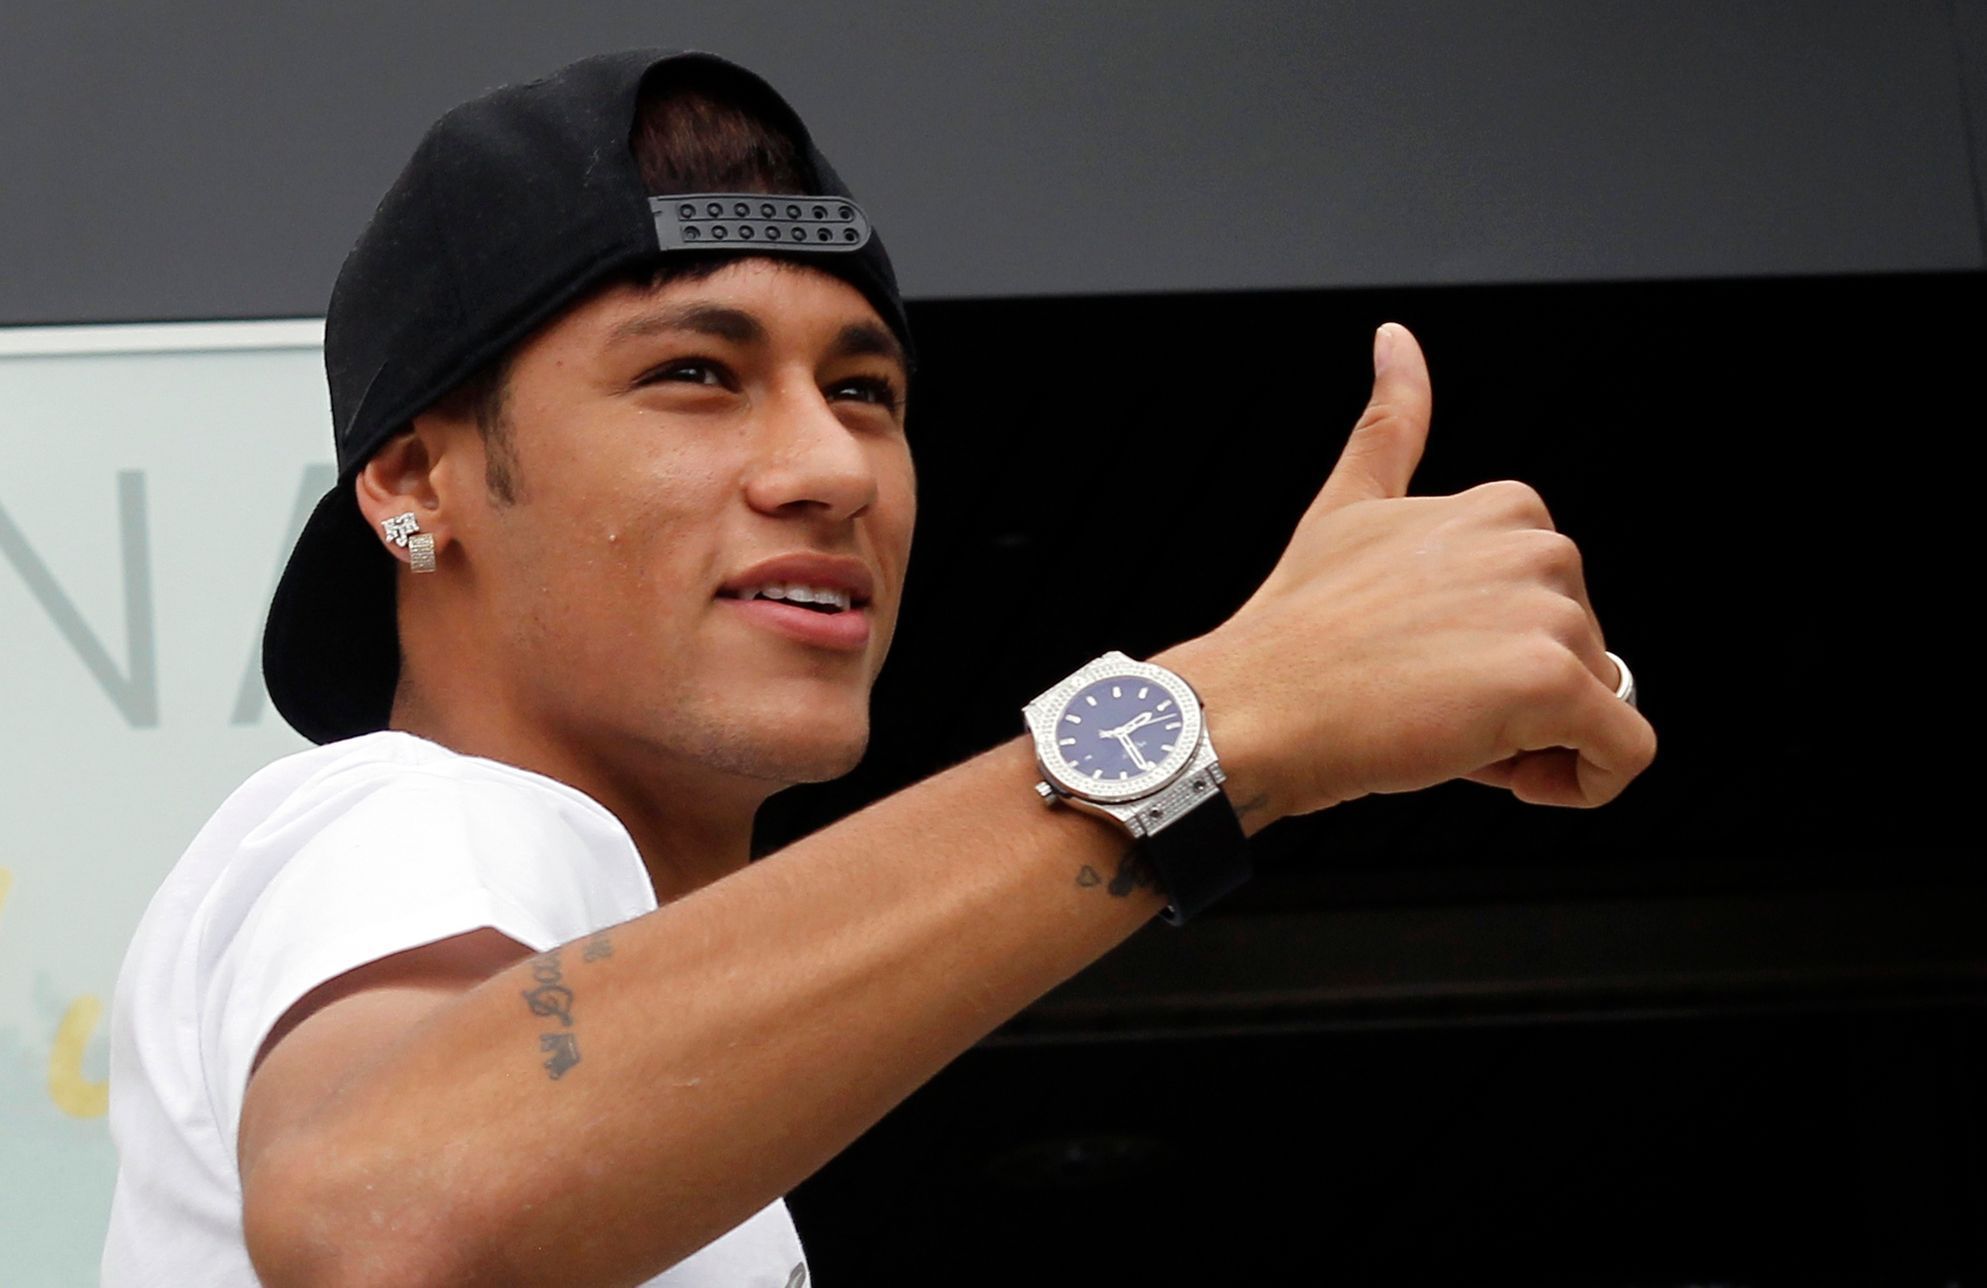 Neymar podepsal smlouvu v Barceloně